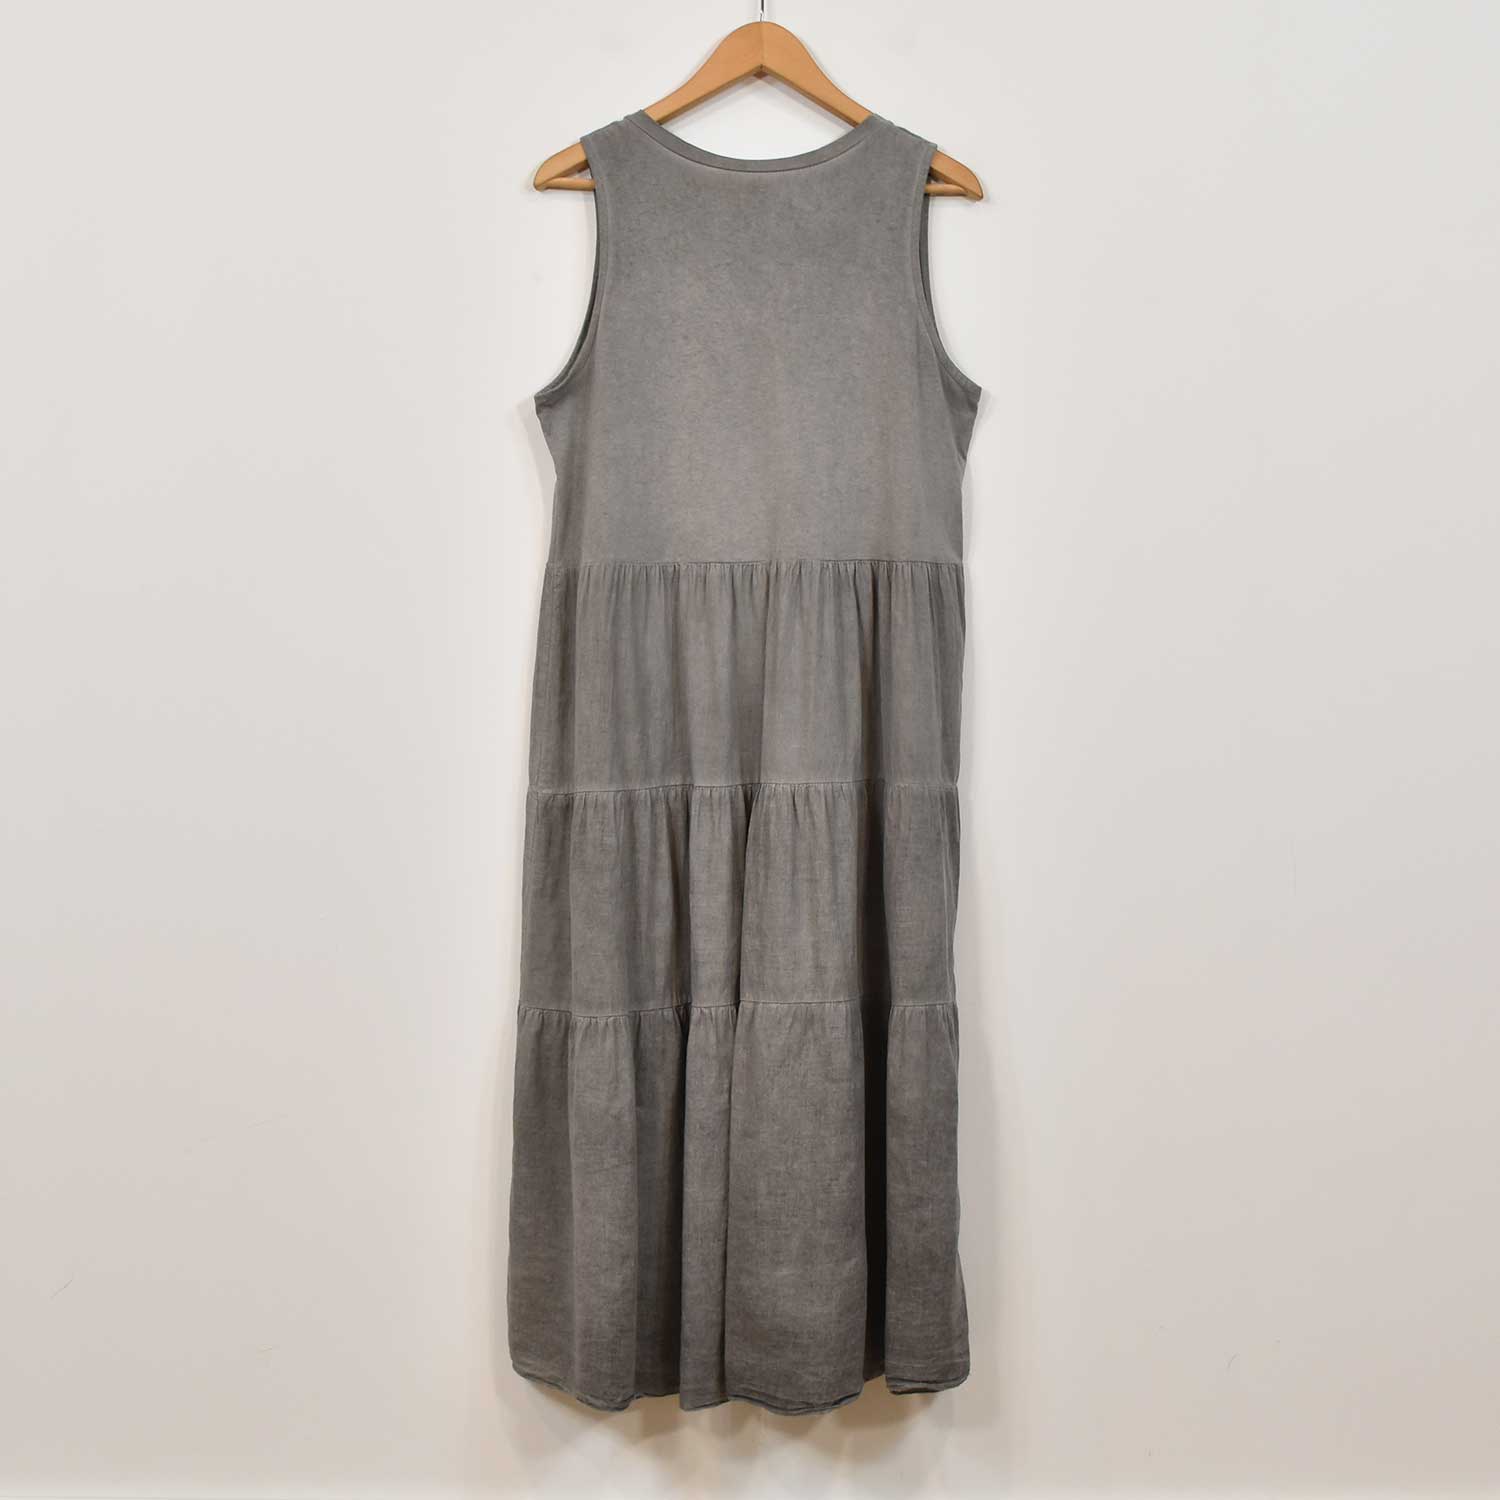 Grey stitching dress
